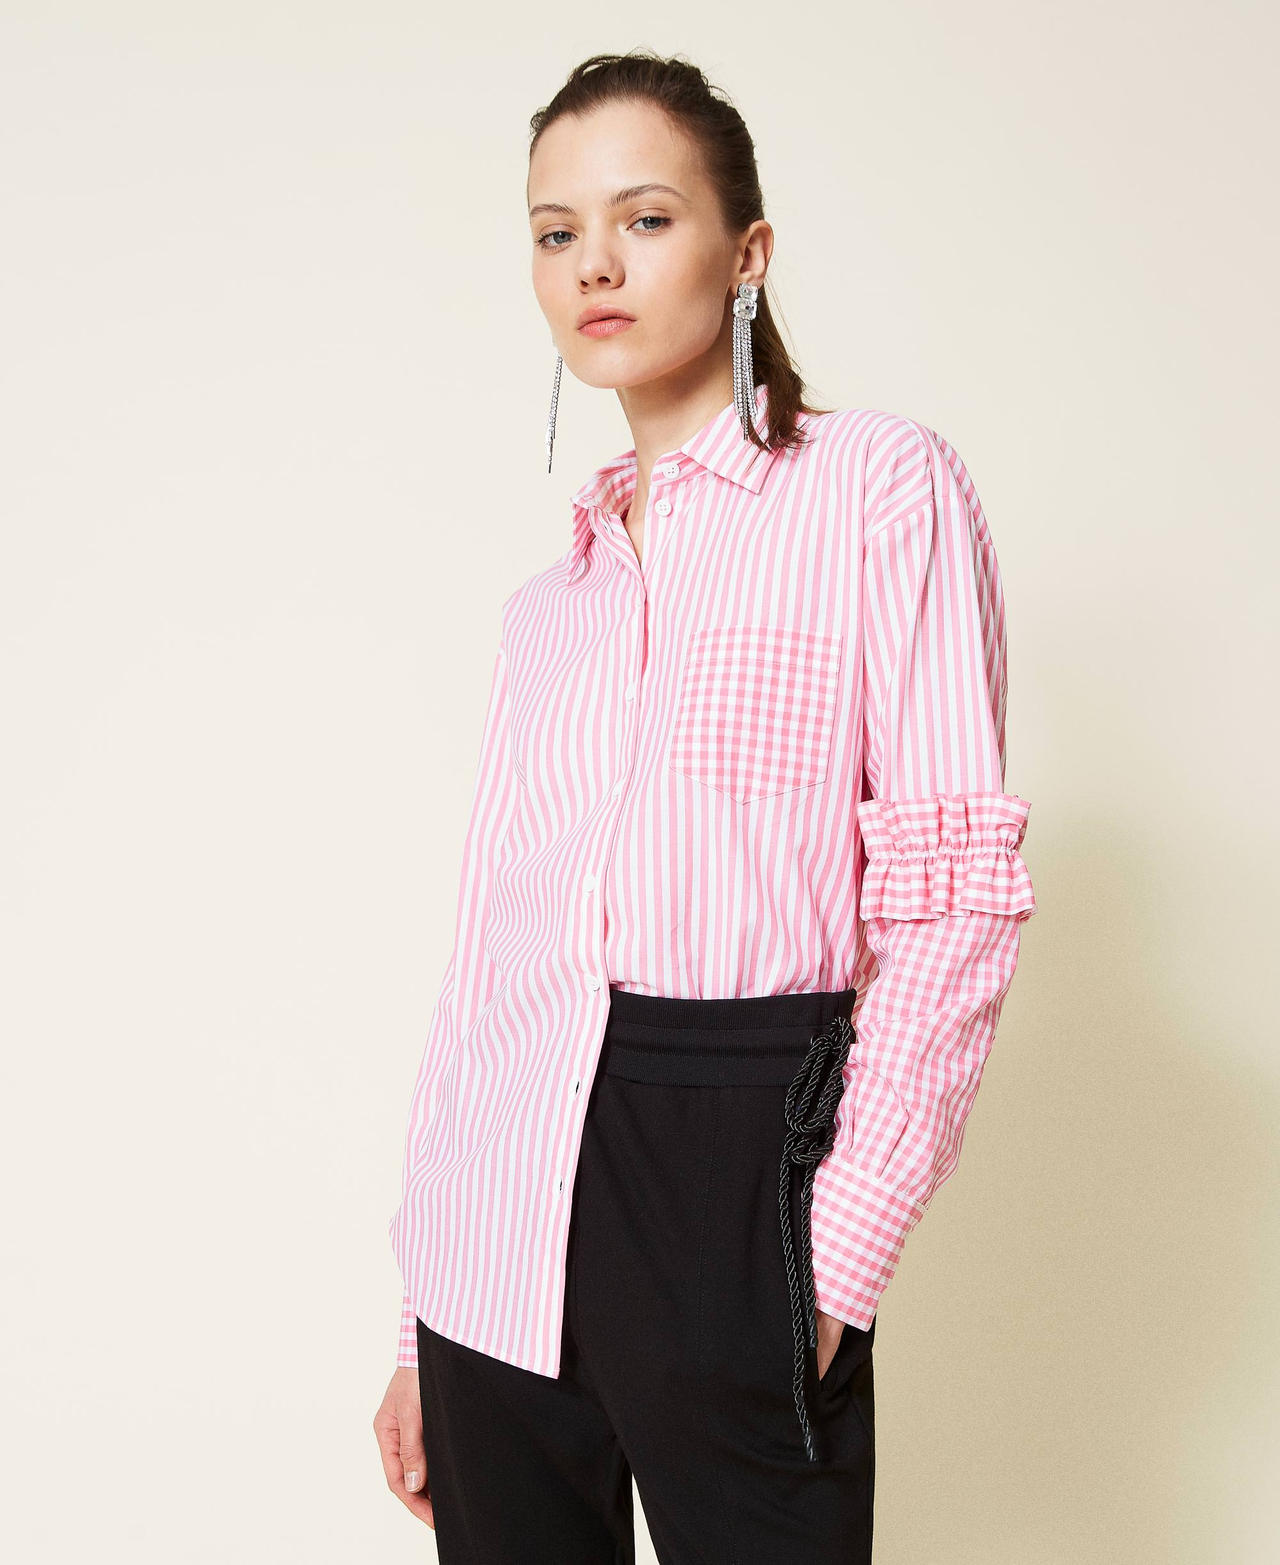 Camisa de rayas con inserciones Vichy Bicolor Off White / Rosa «Hot Pink» Mujer 221AT2251-02